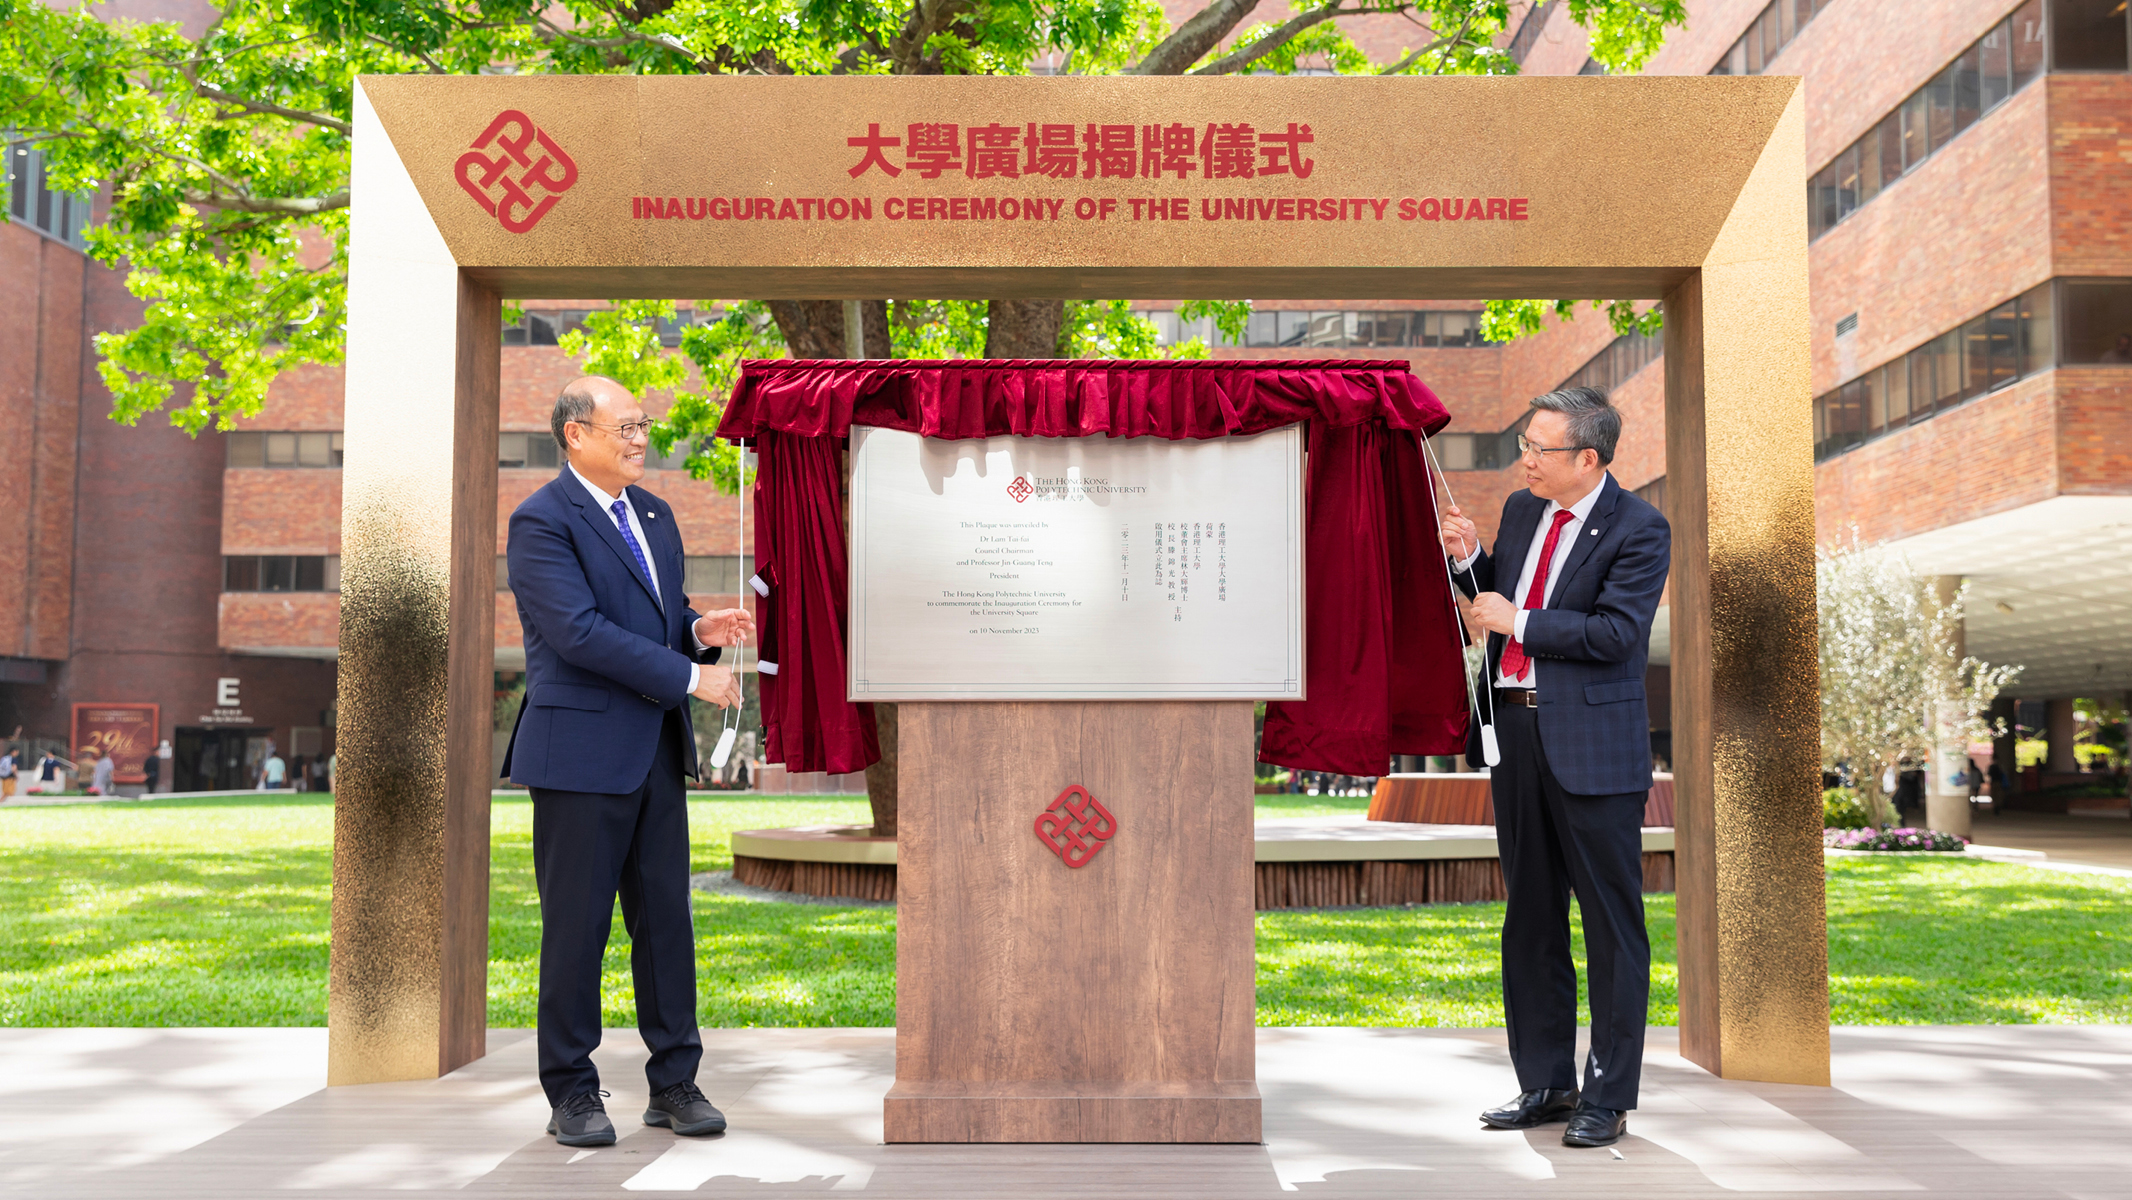 林大辉博士（左）和滕锦光教授主持了大学广场揭牌仪式。